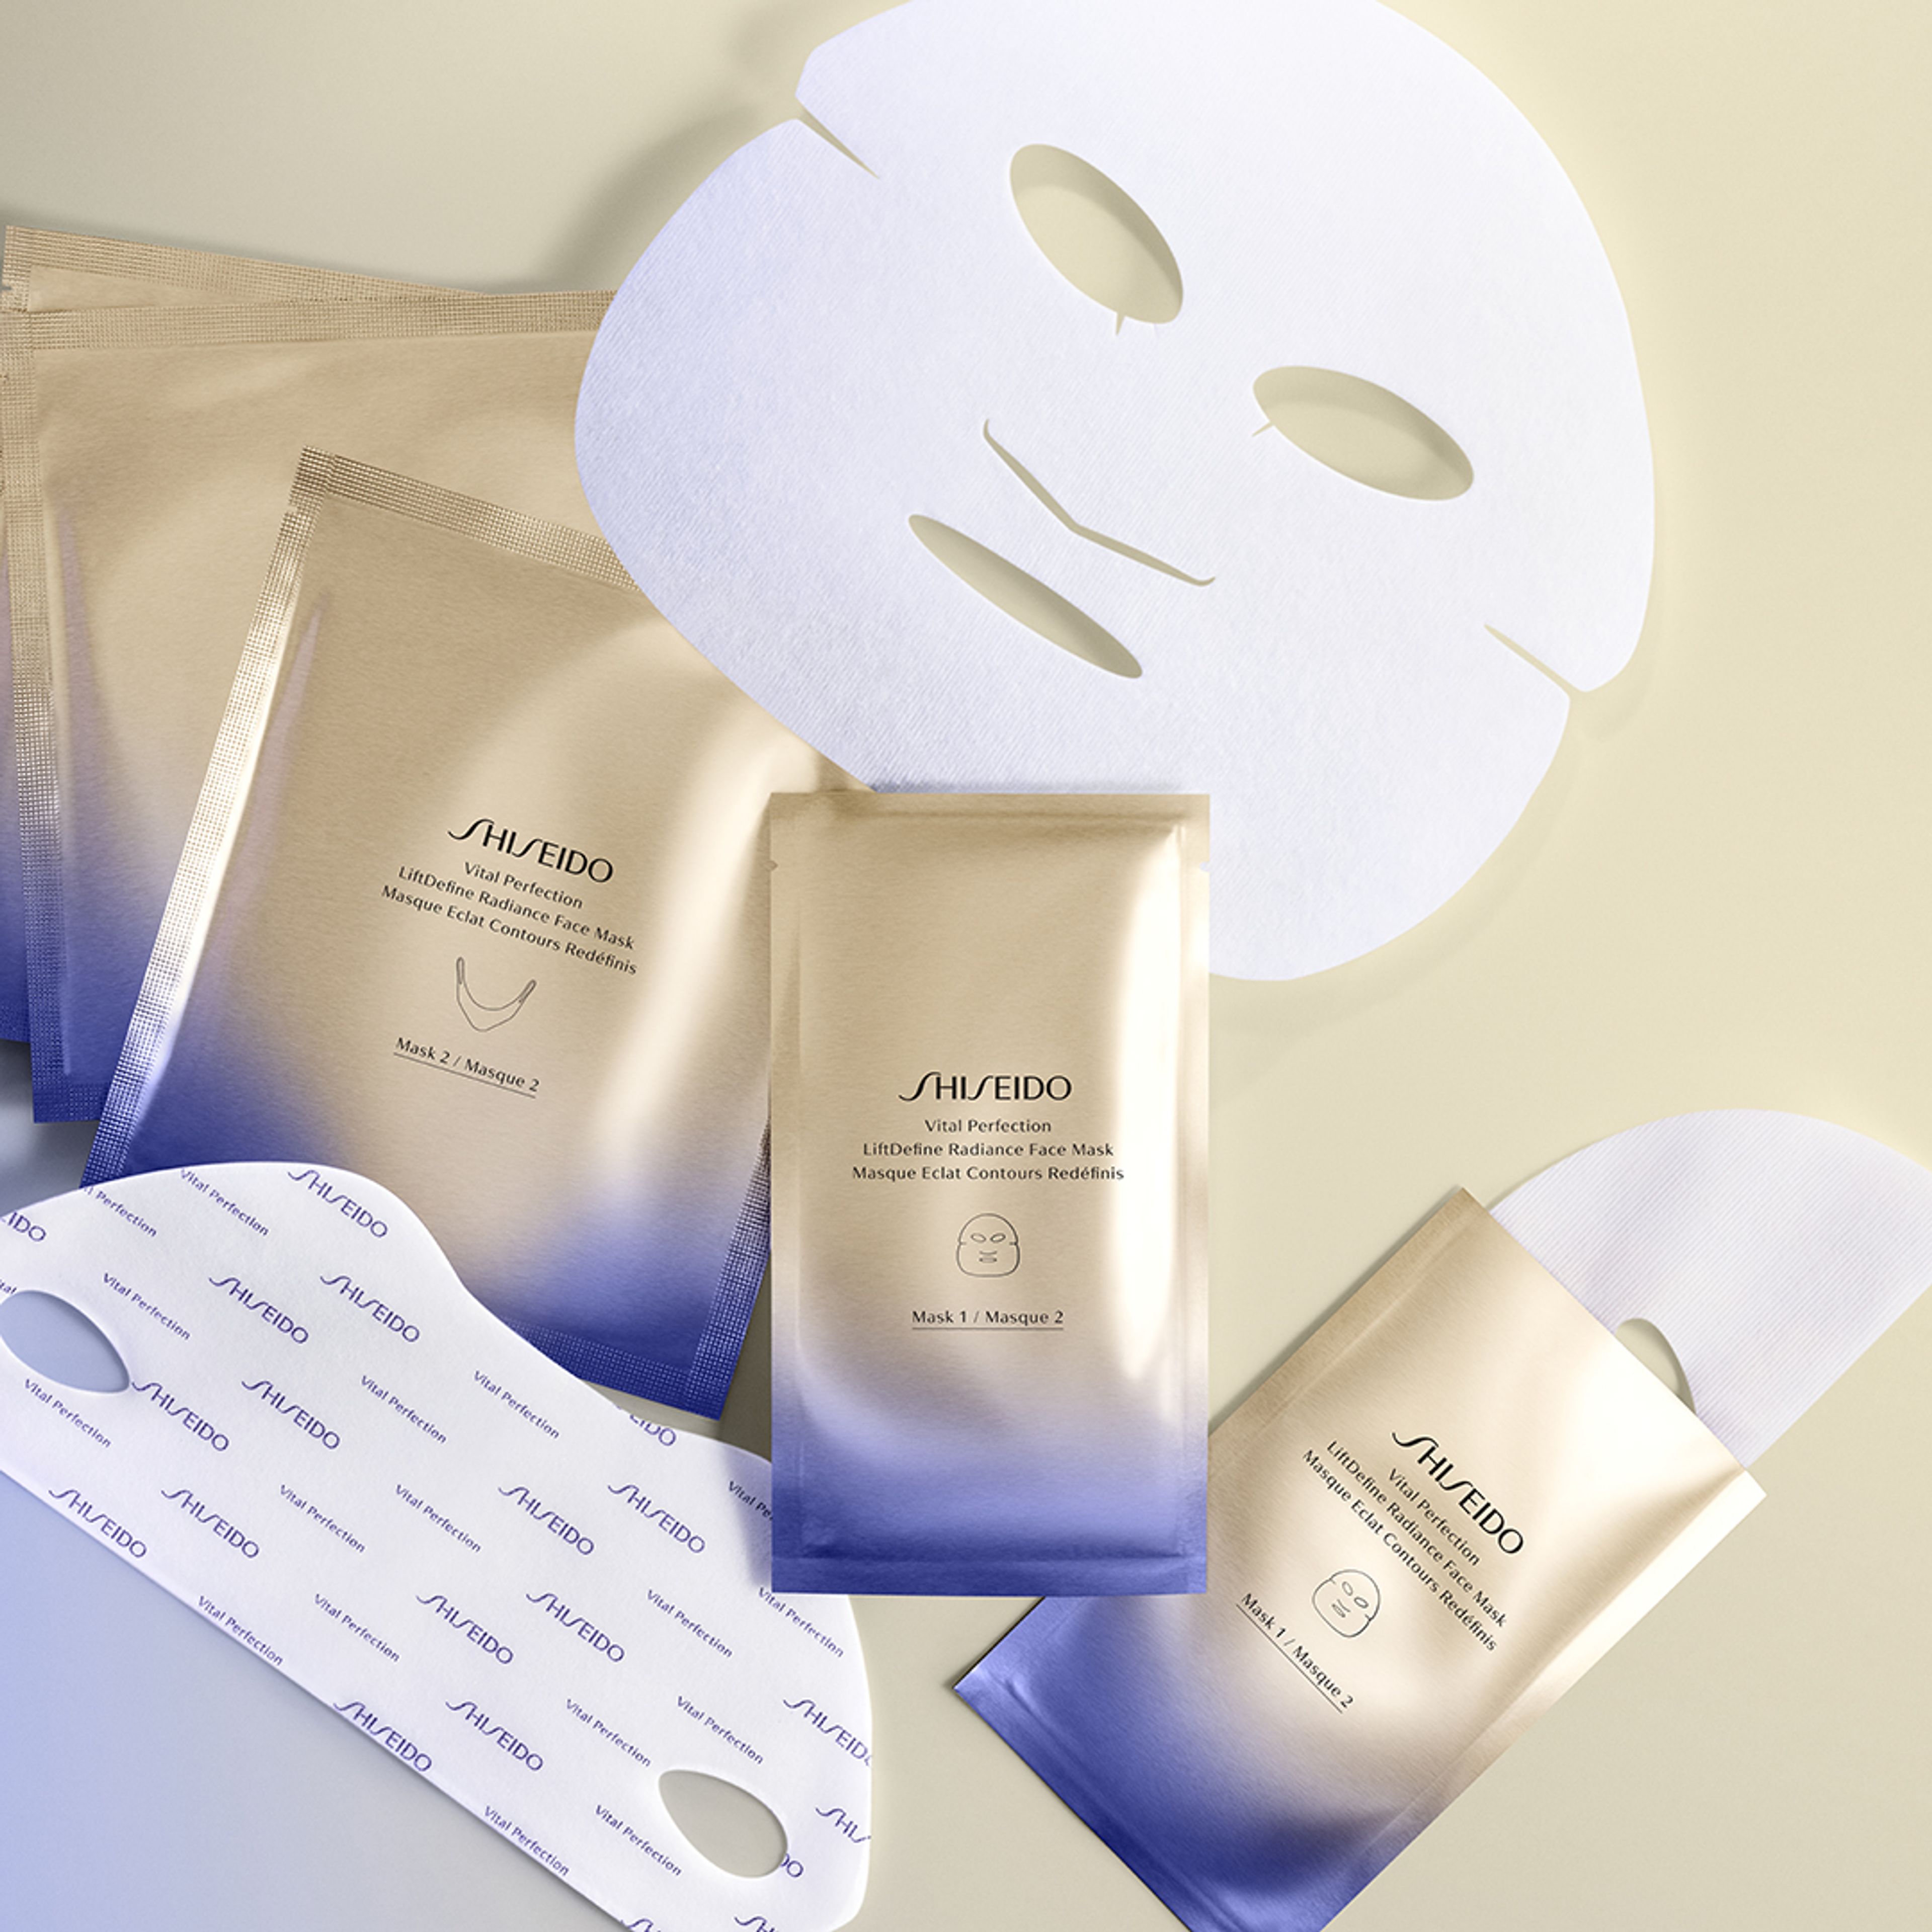 Shiseido Liftdefine Radiance Face Mask 3